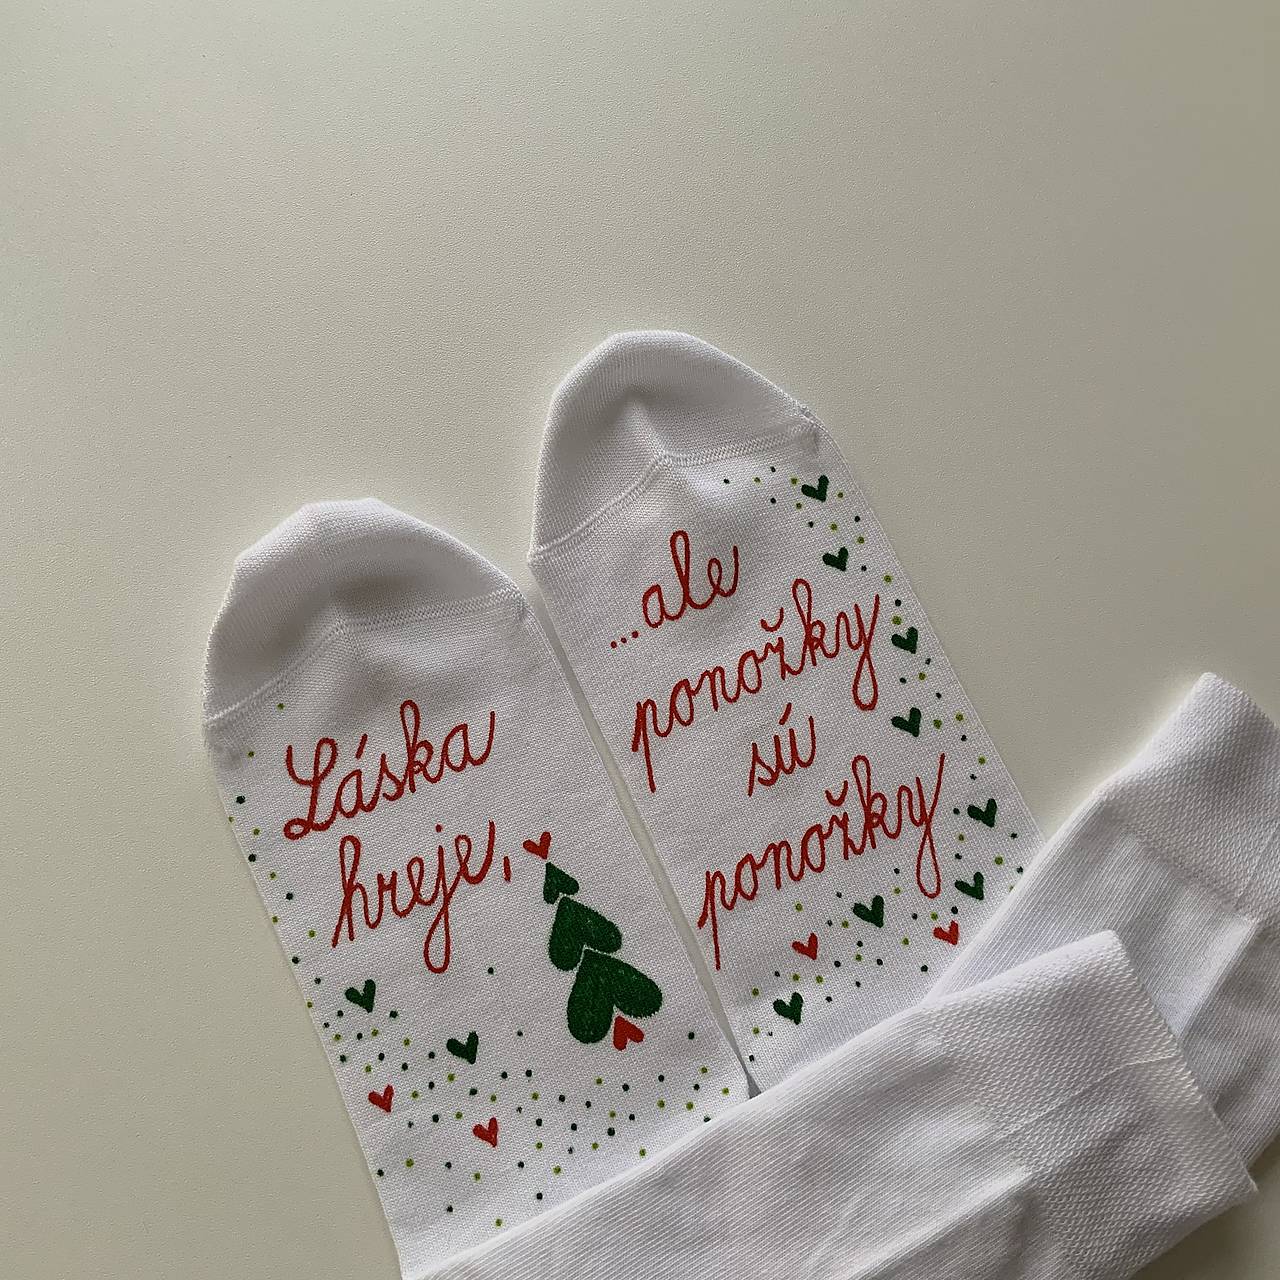 Maľované ponožky s nápisom “LÁSKA HREJE, ale ponožky sú ponožky :) (biele vianočneladené)